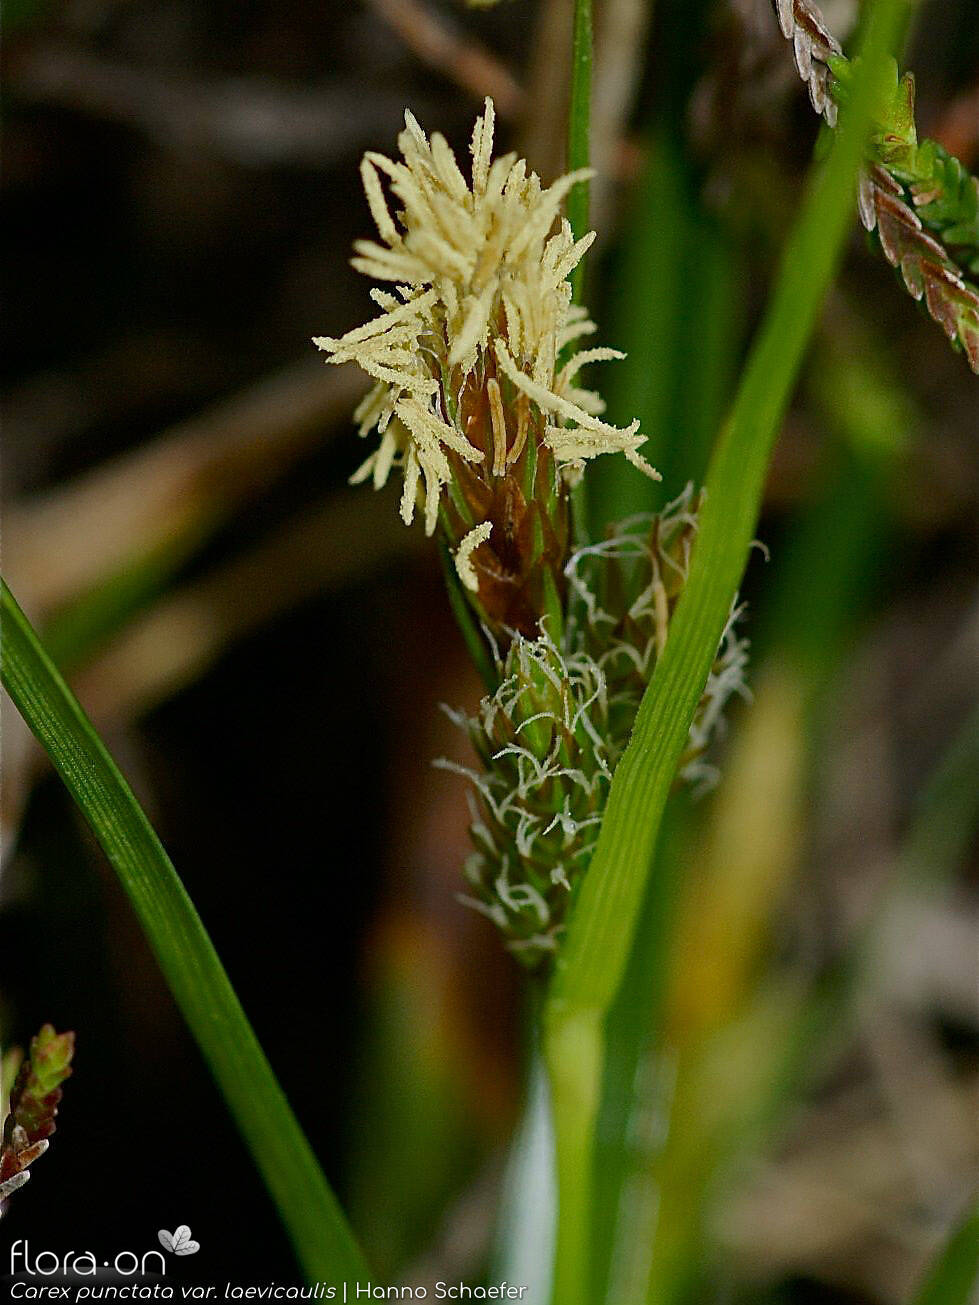 Carex punctata laevicaulis -  | Hanno Schaefer; CC BY-NC 4.0